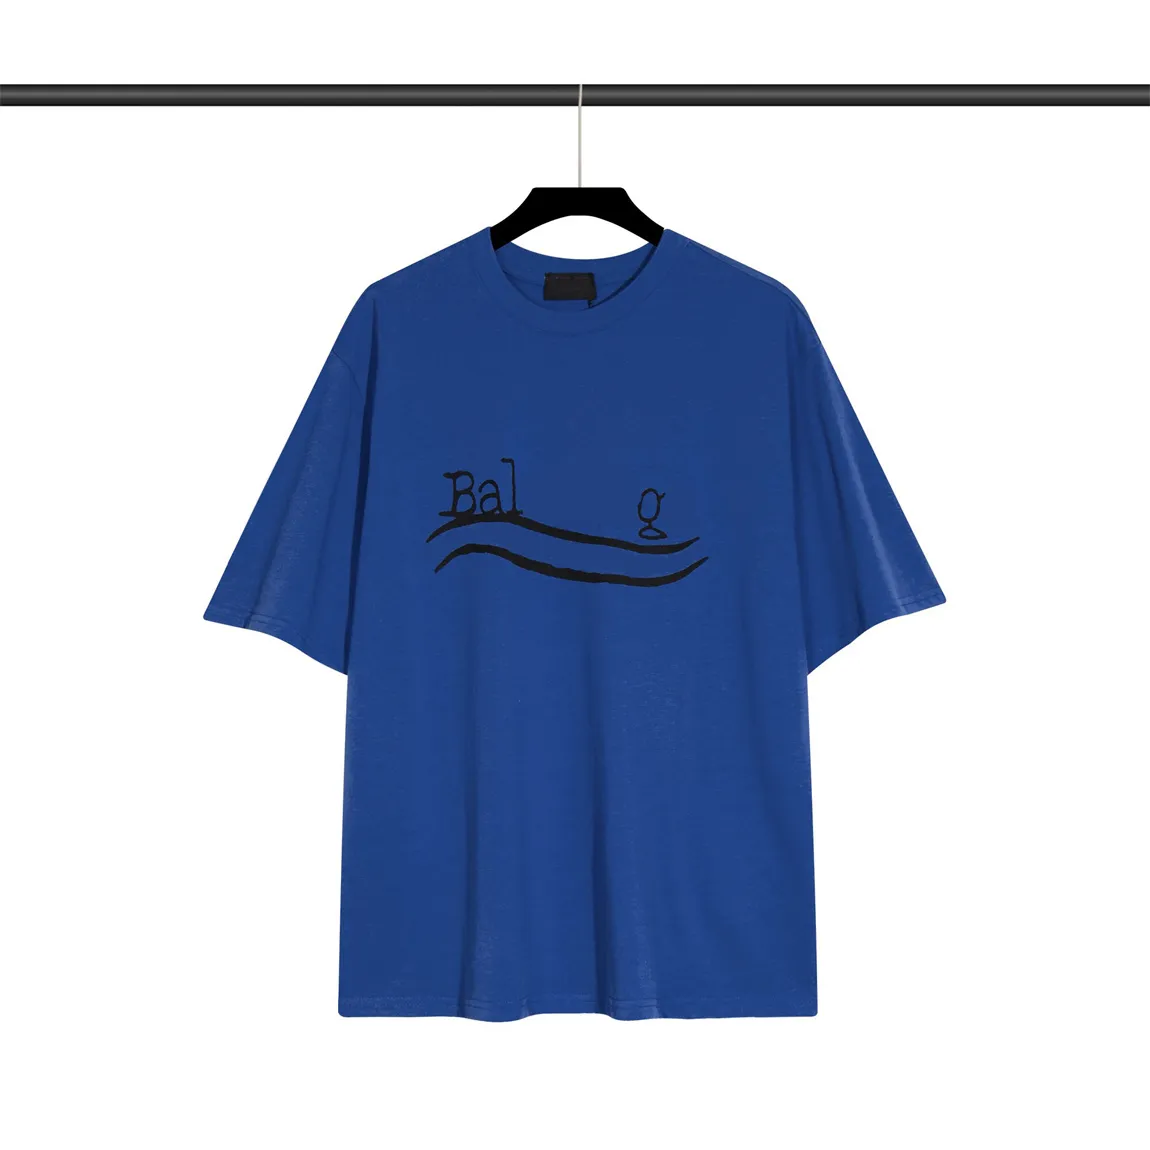 mens designer shirts men tee shirt Vêtements de qualité Lettres imprimées Stylist top Casual Summer Fashion tshirt Round Neck Short Sleeve Blue t-shirts for womens